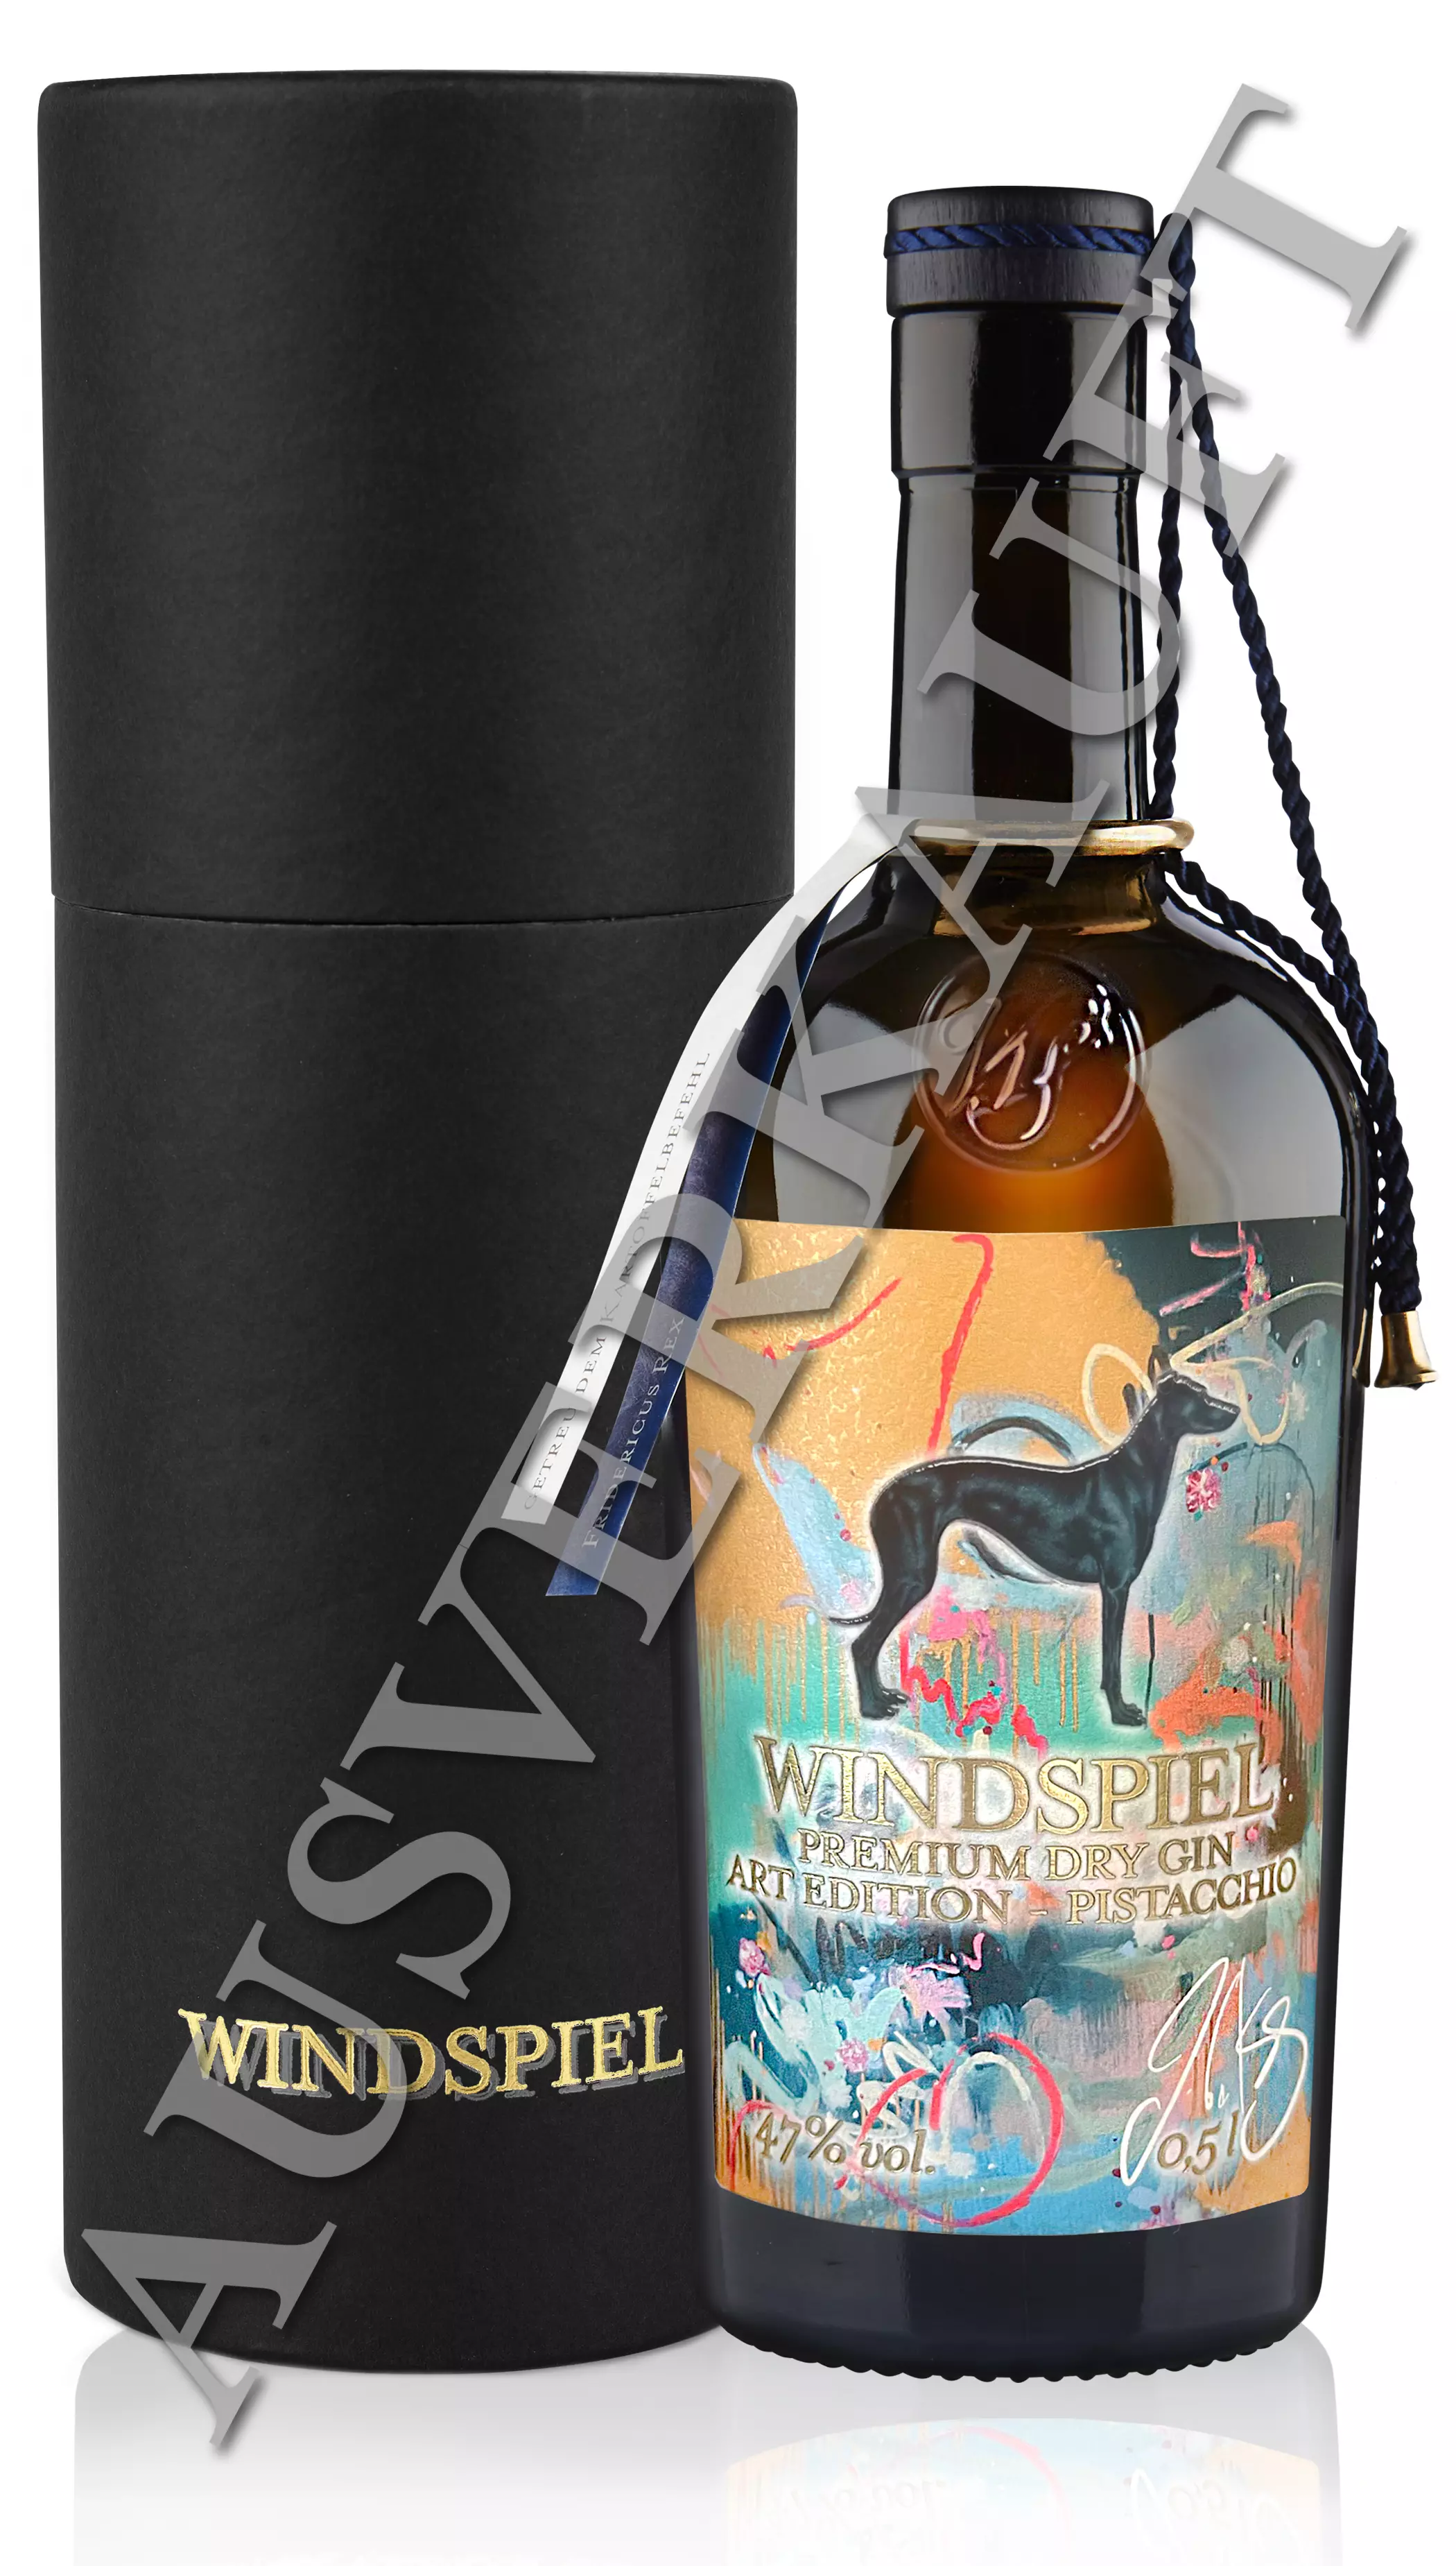 Windspiel Premium Dry Gin Art Edition Pistacchio 47% 0,5l